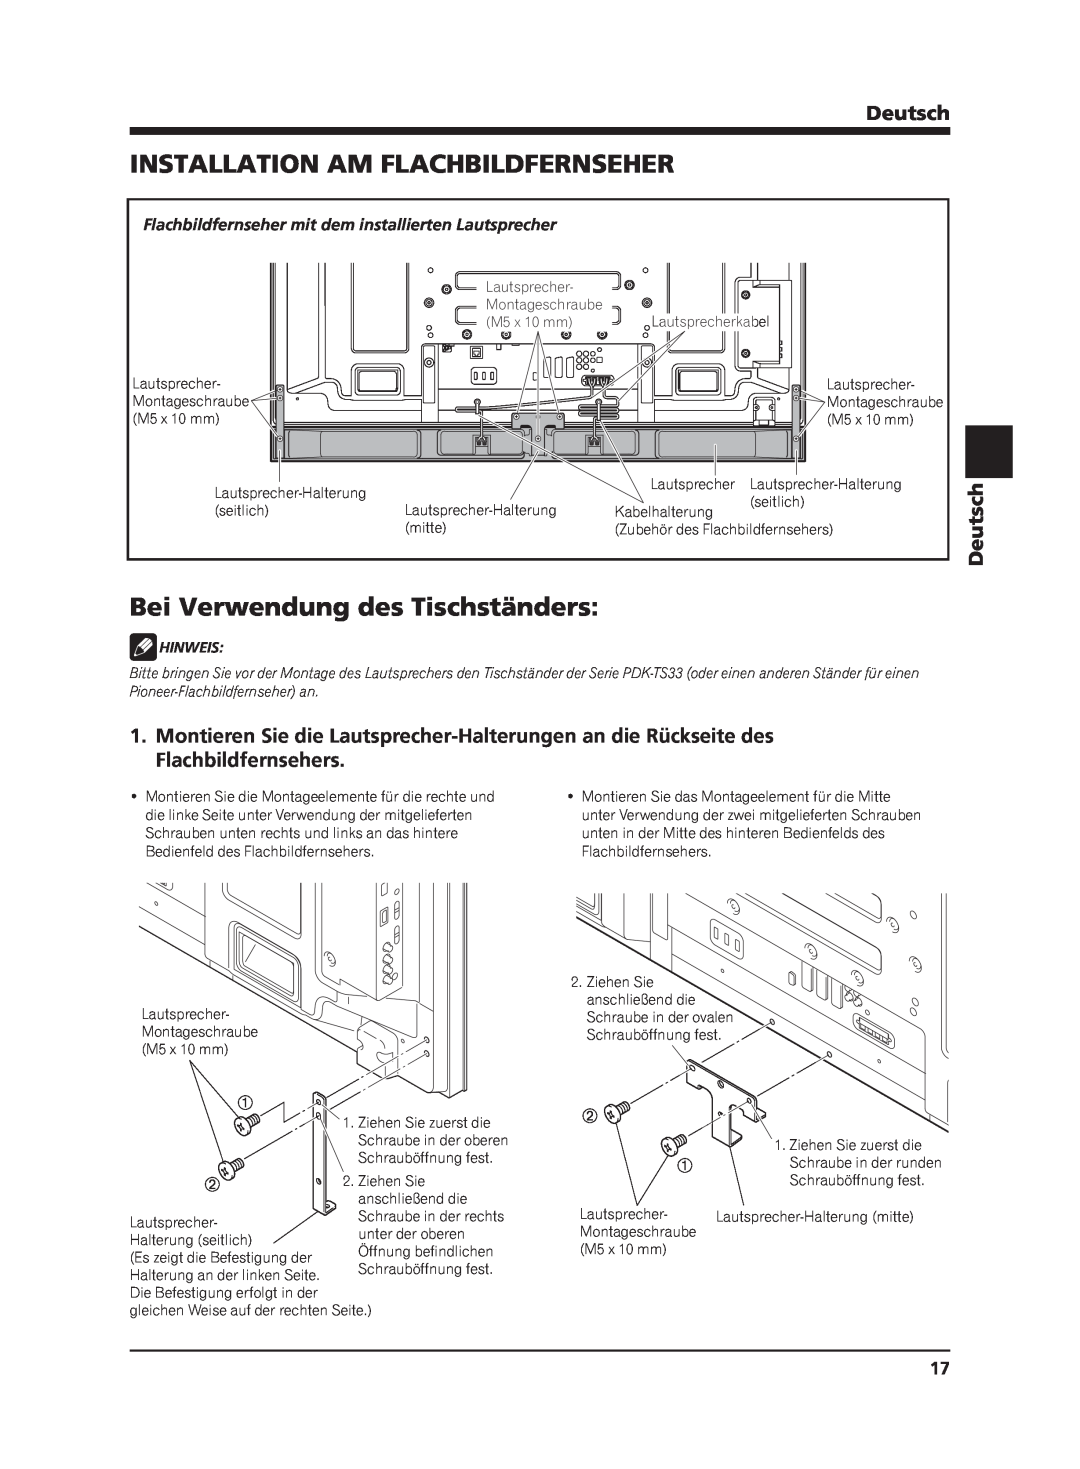 Pioneer PDP-S63 manual Installation Am Flachbildfernseher, Bei Verwendung des Tischständers, Deutsch, Hinweis 